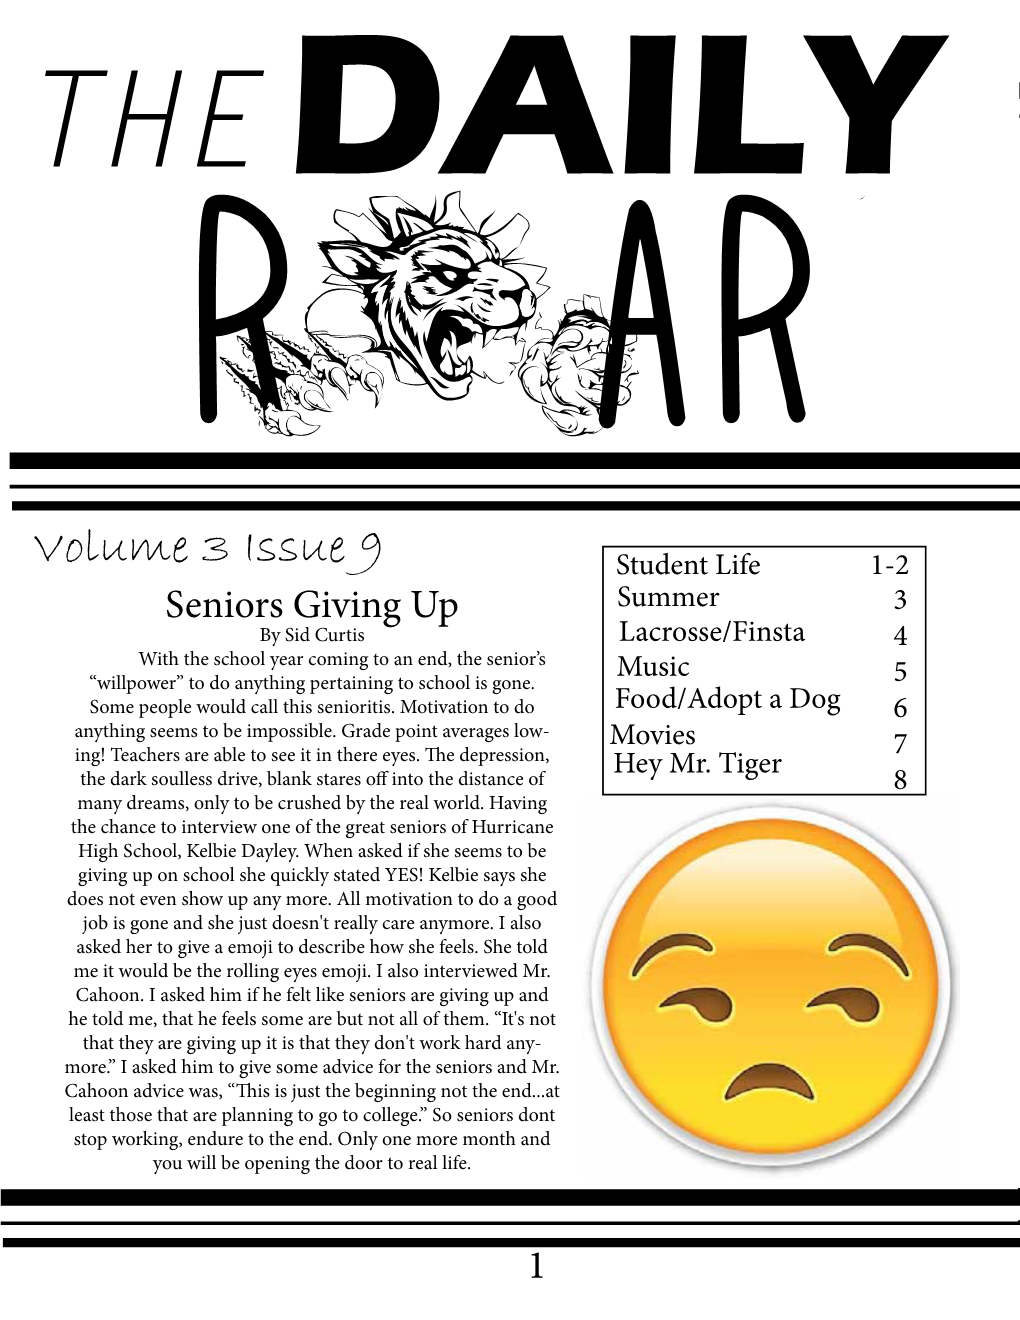 Volume 3 Issue 9